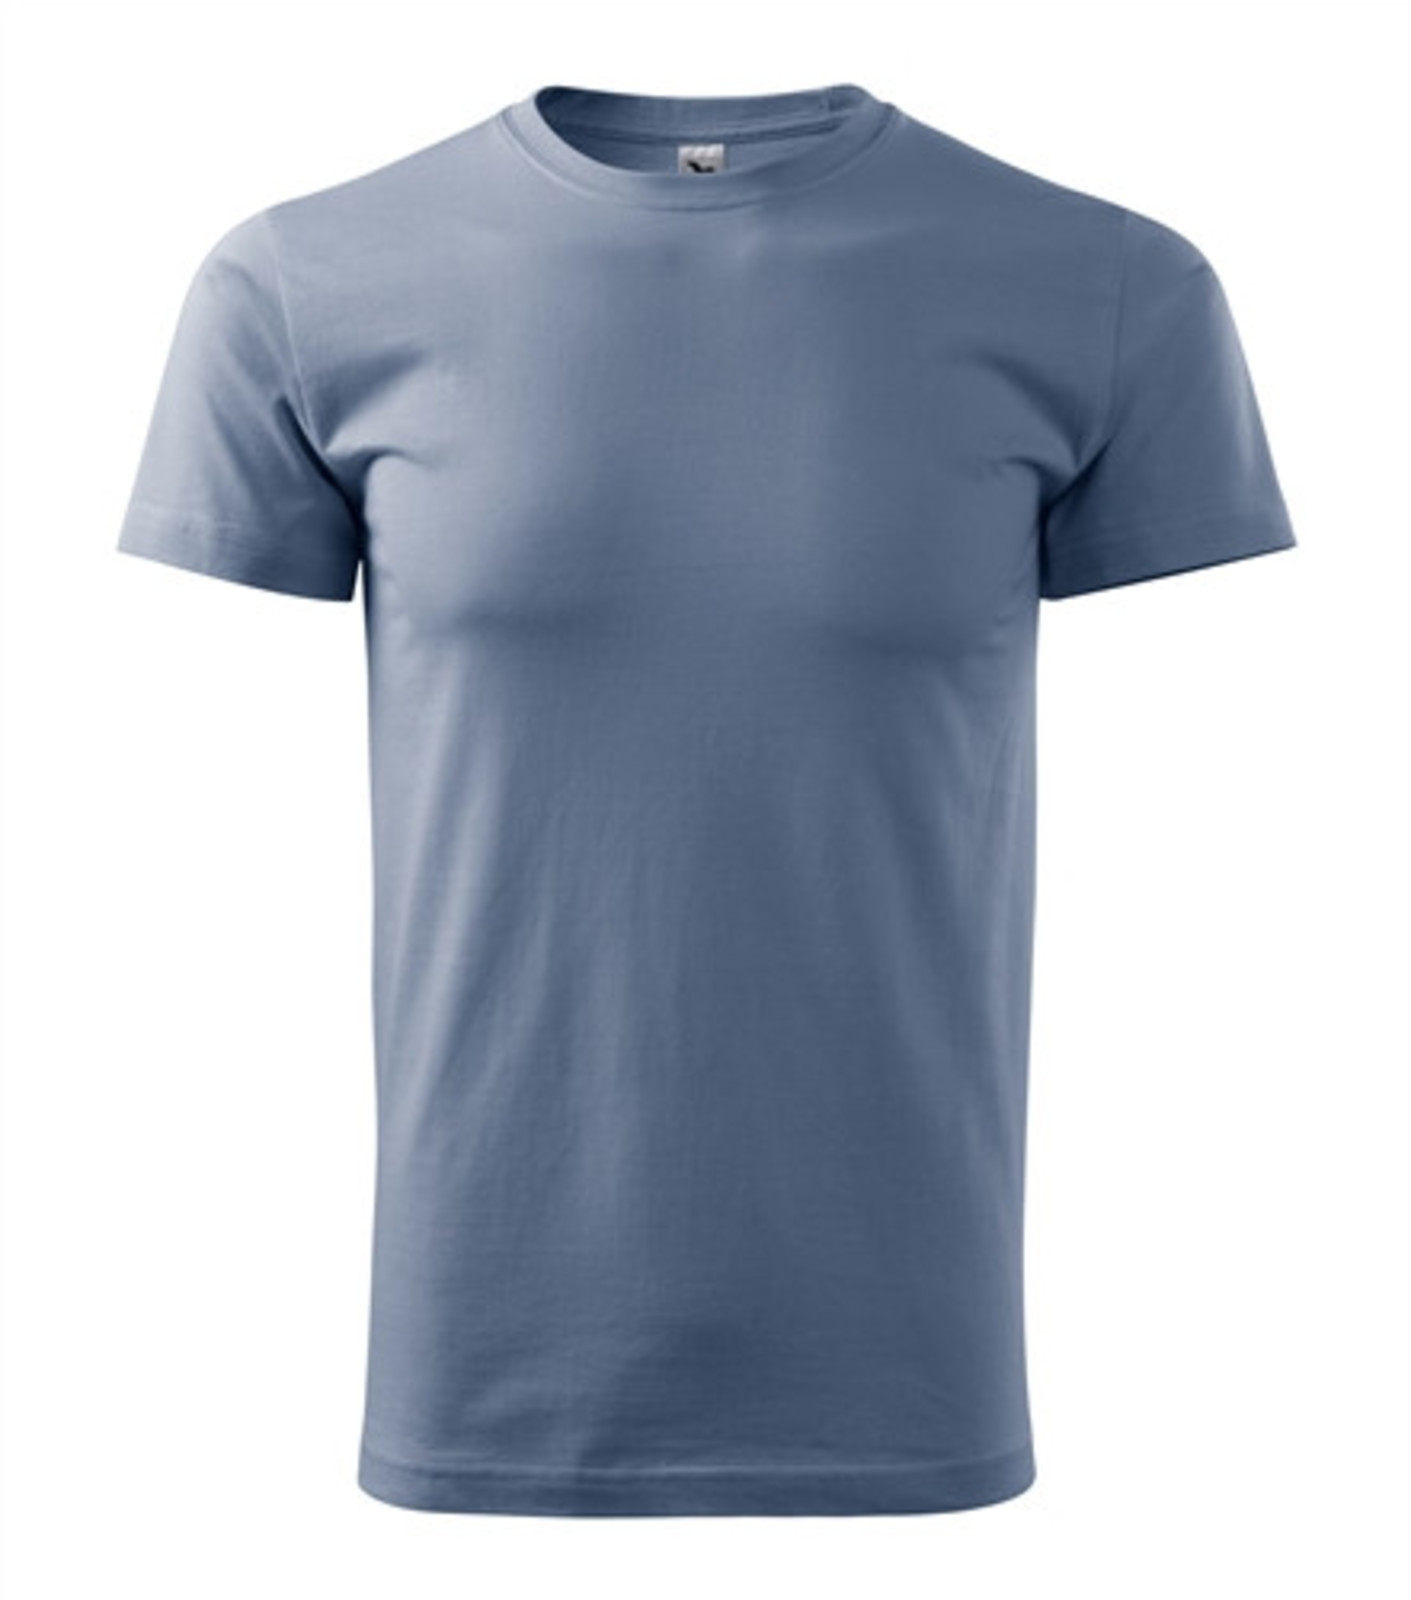 Pánske tričko Malfini Basic 129 - veľkosť: 3XL, farba: denim